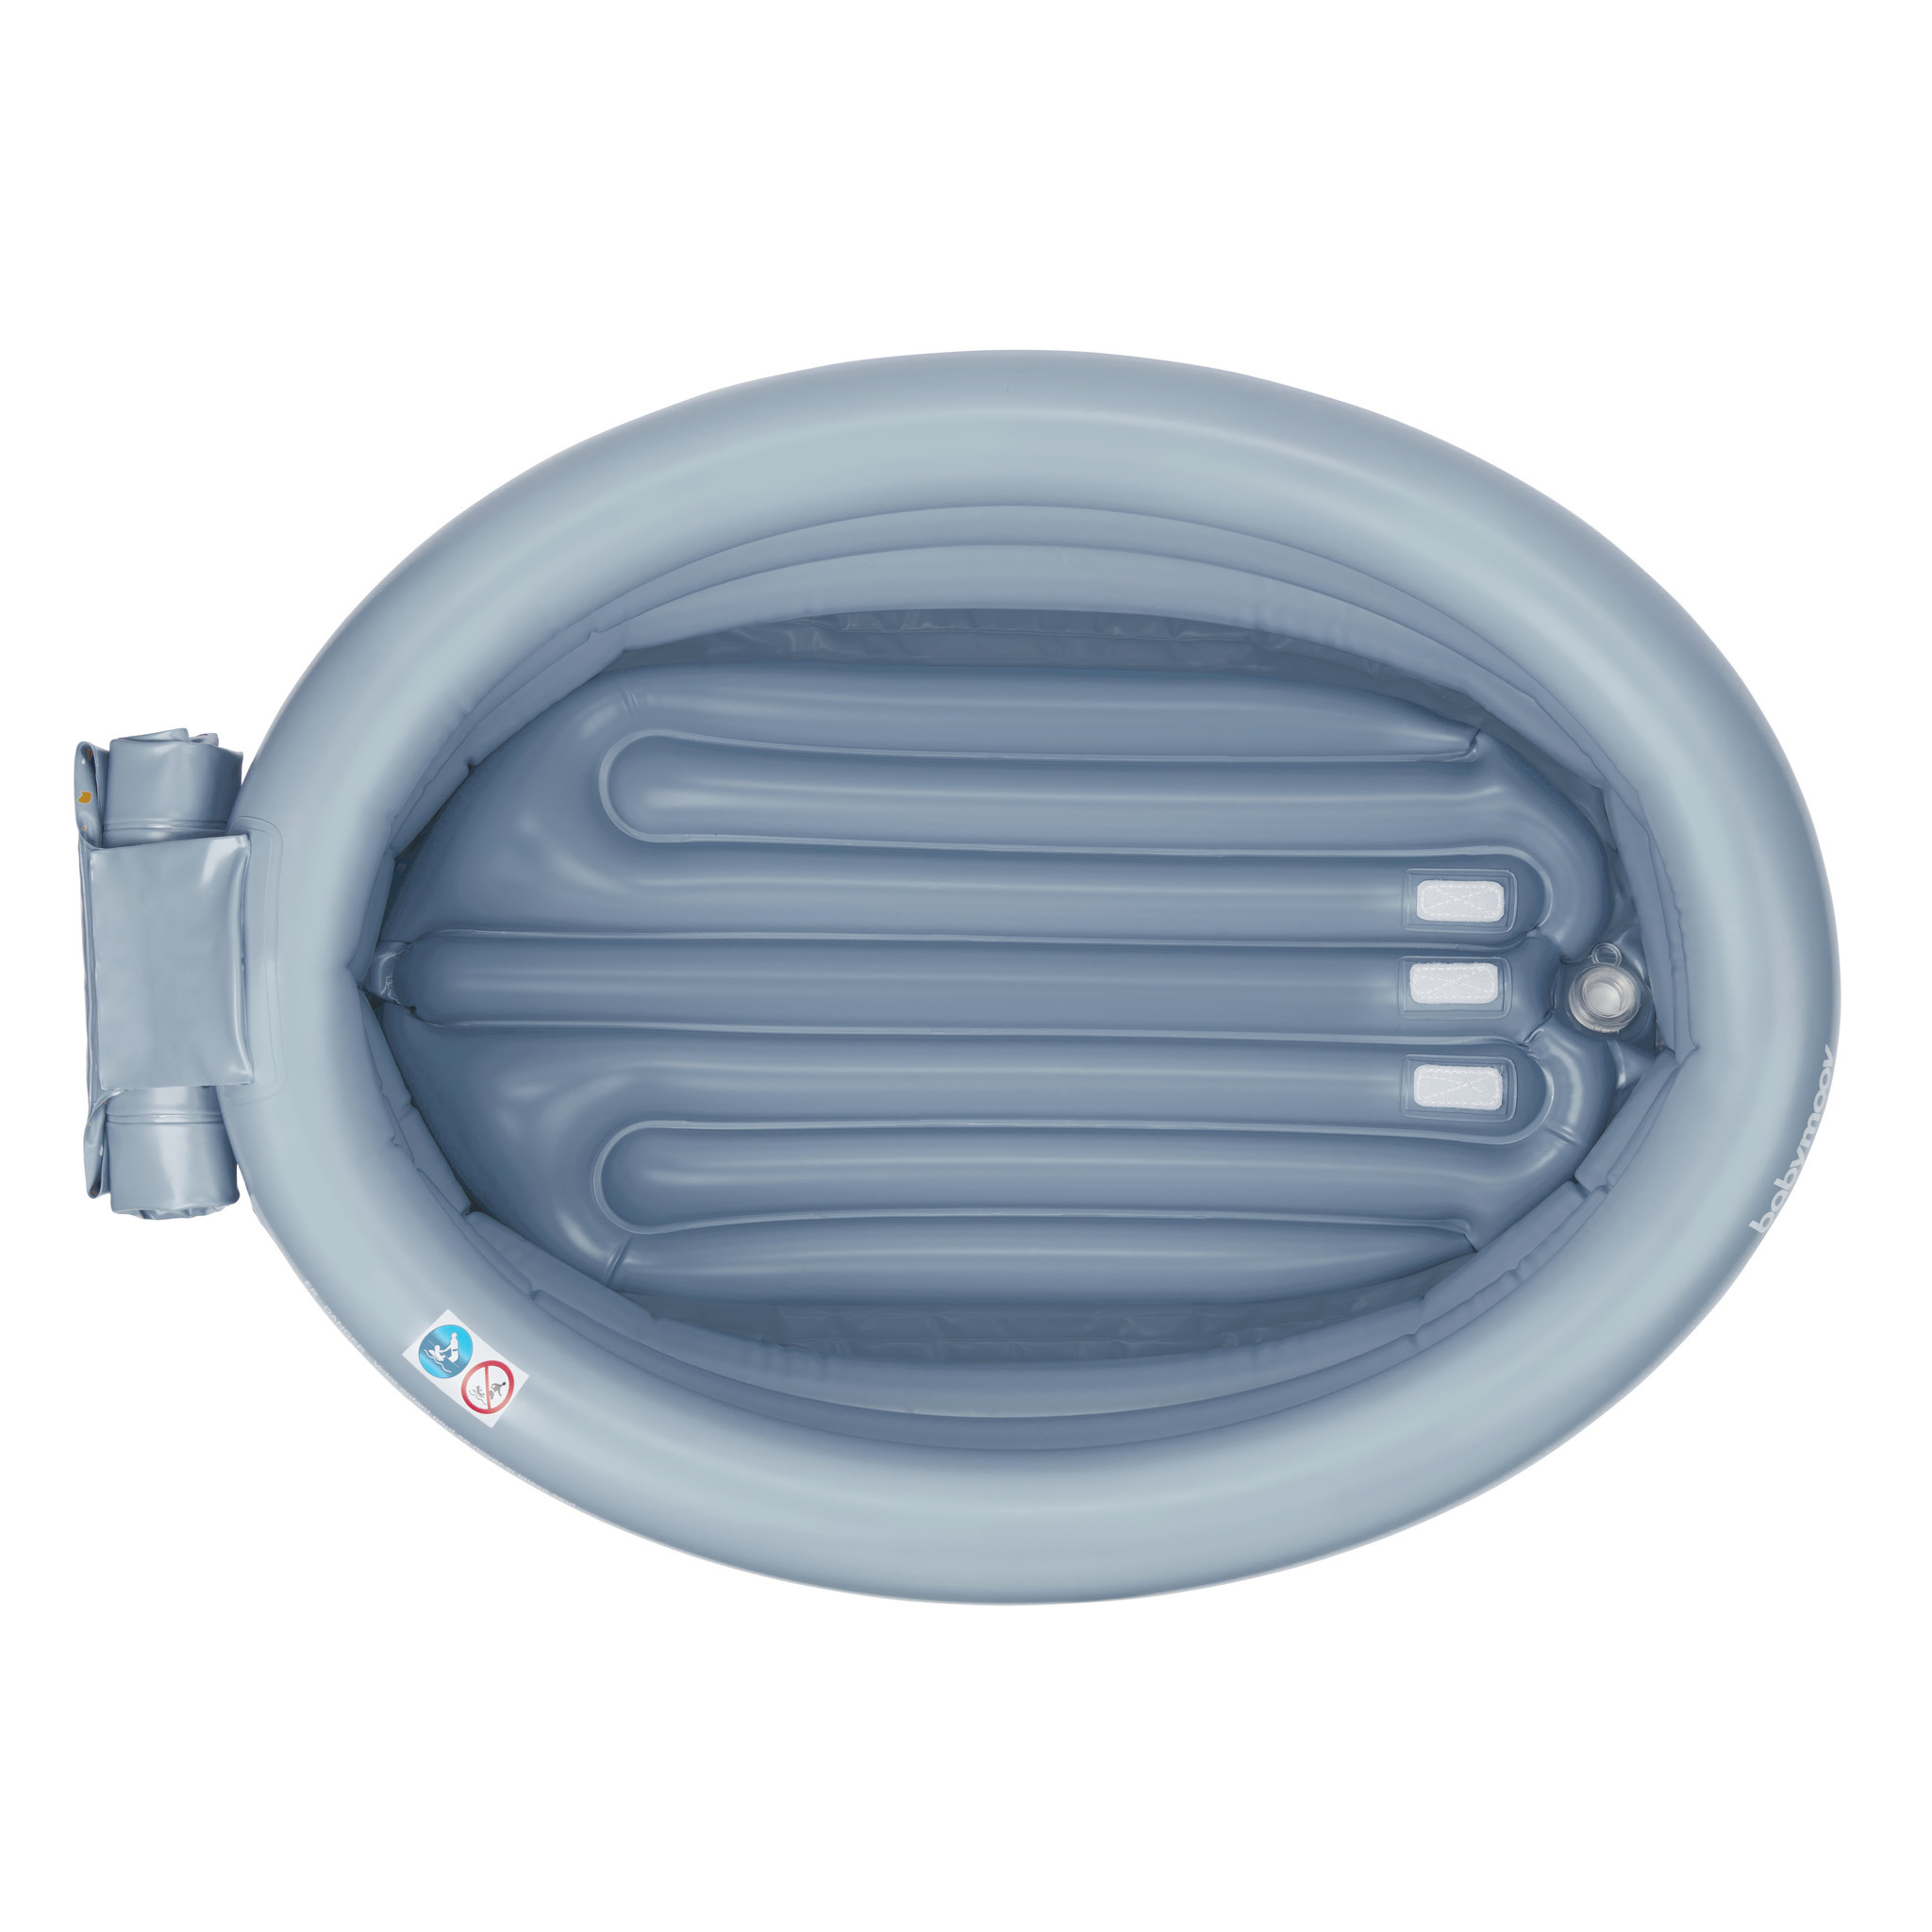 Baignoire gonflable évolutive aqua dots grise de Babymoov sur allobébé